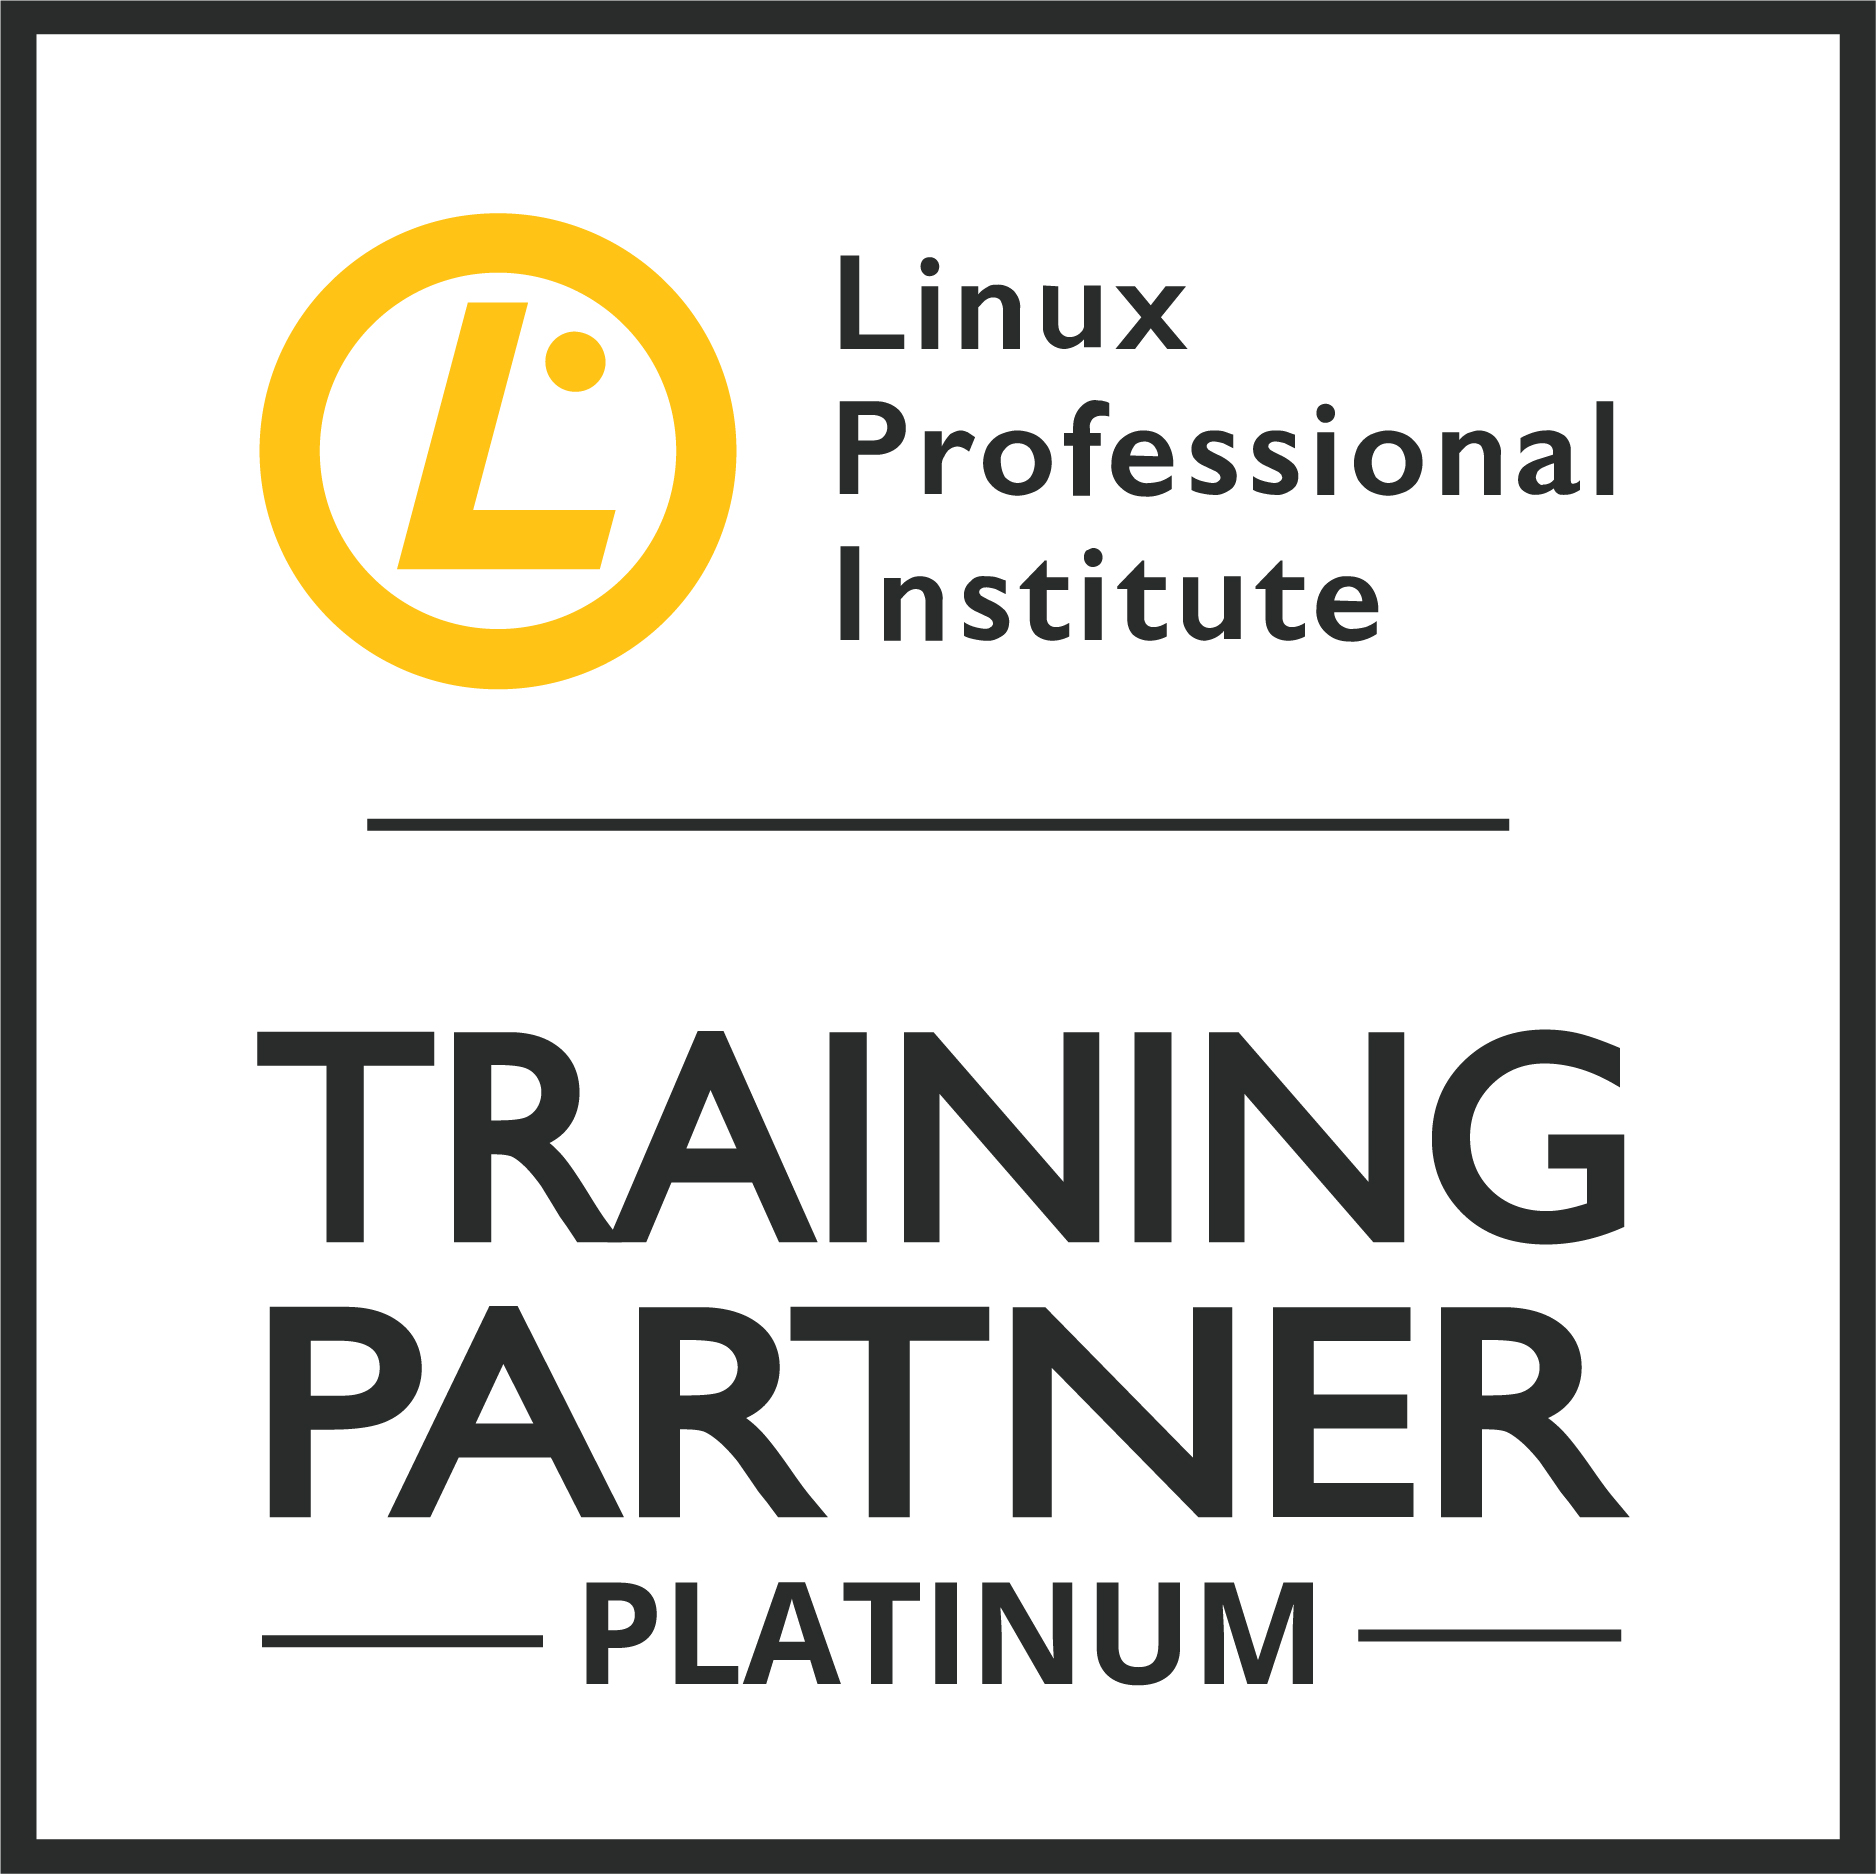 Linux Professional Institution TorqeIT Training Partner Platinum